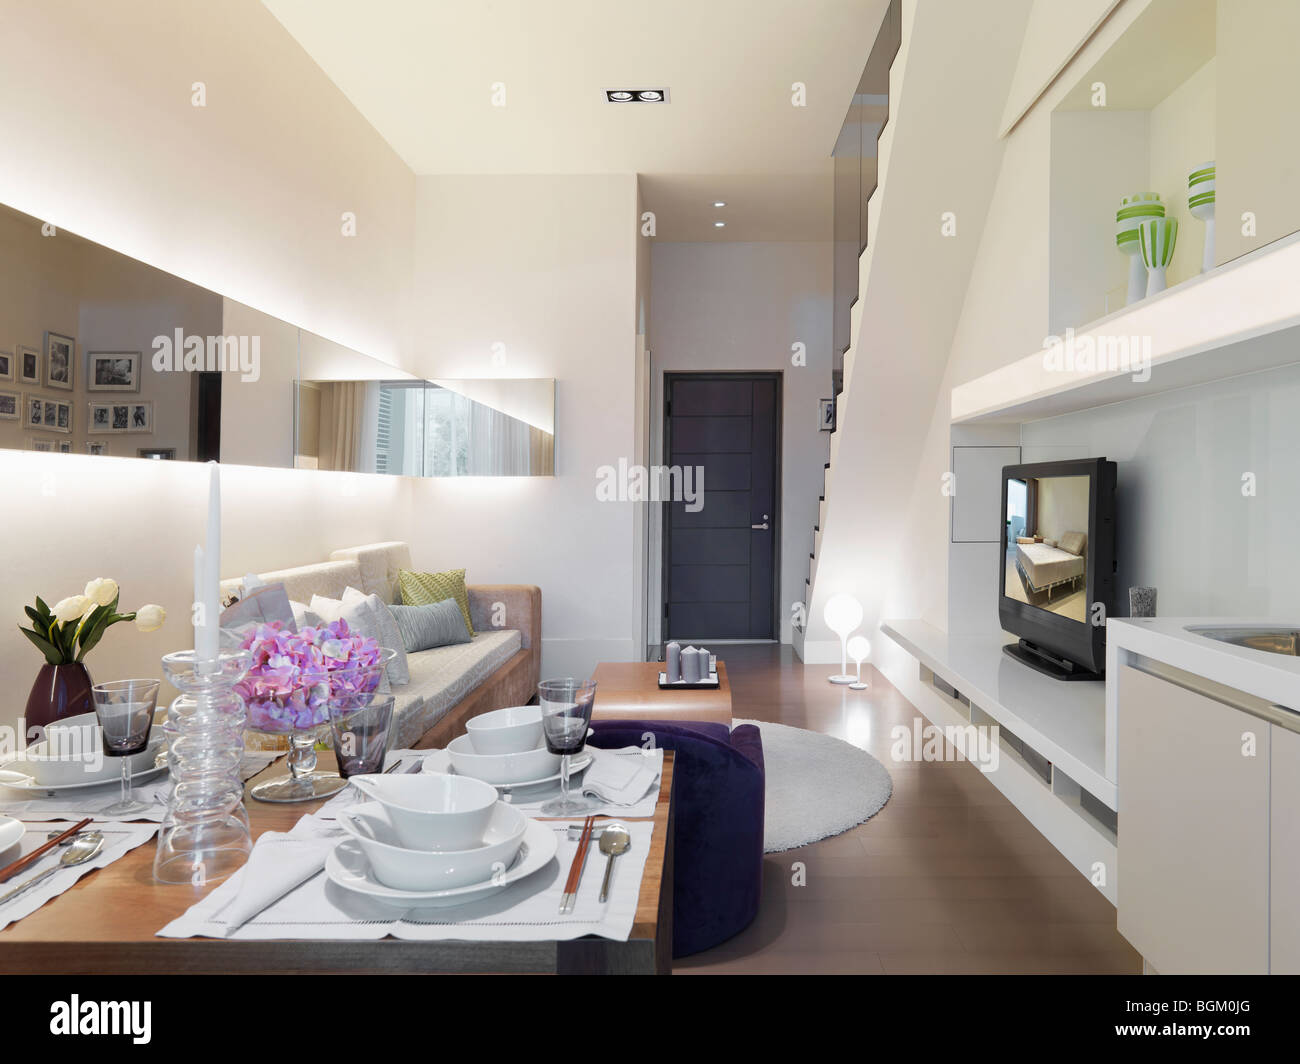 Cuisine et salle de séjour dans cet appartement moderne accueil Banque D'Images